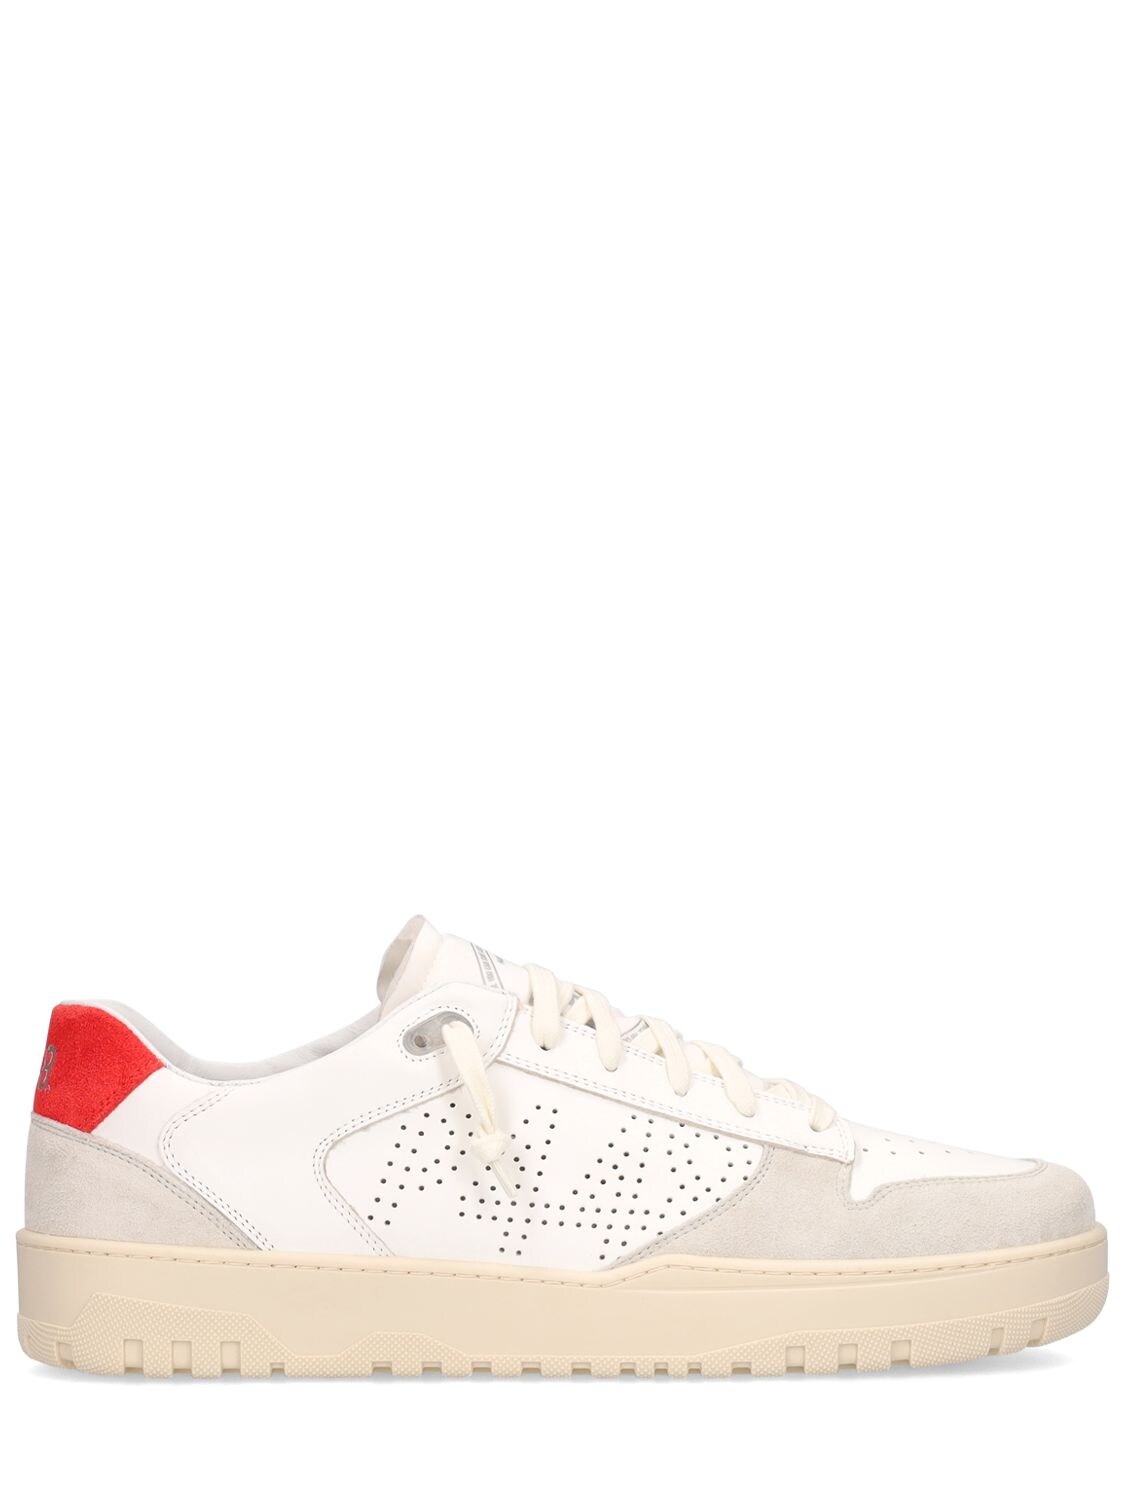 P448 - Mason leather low top sneakers - White/Red | Luisaviaroma